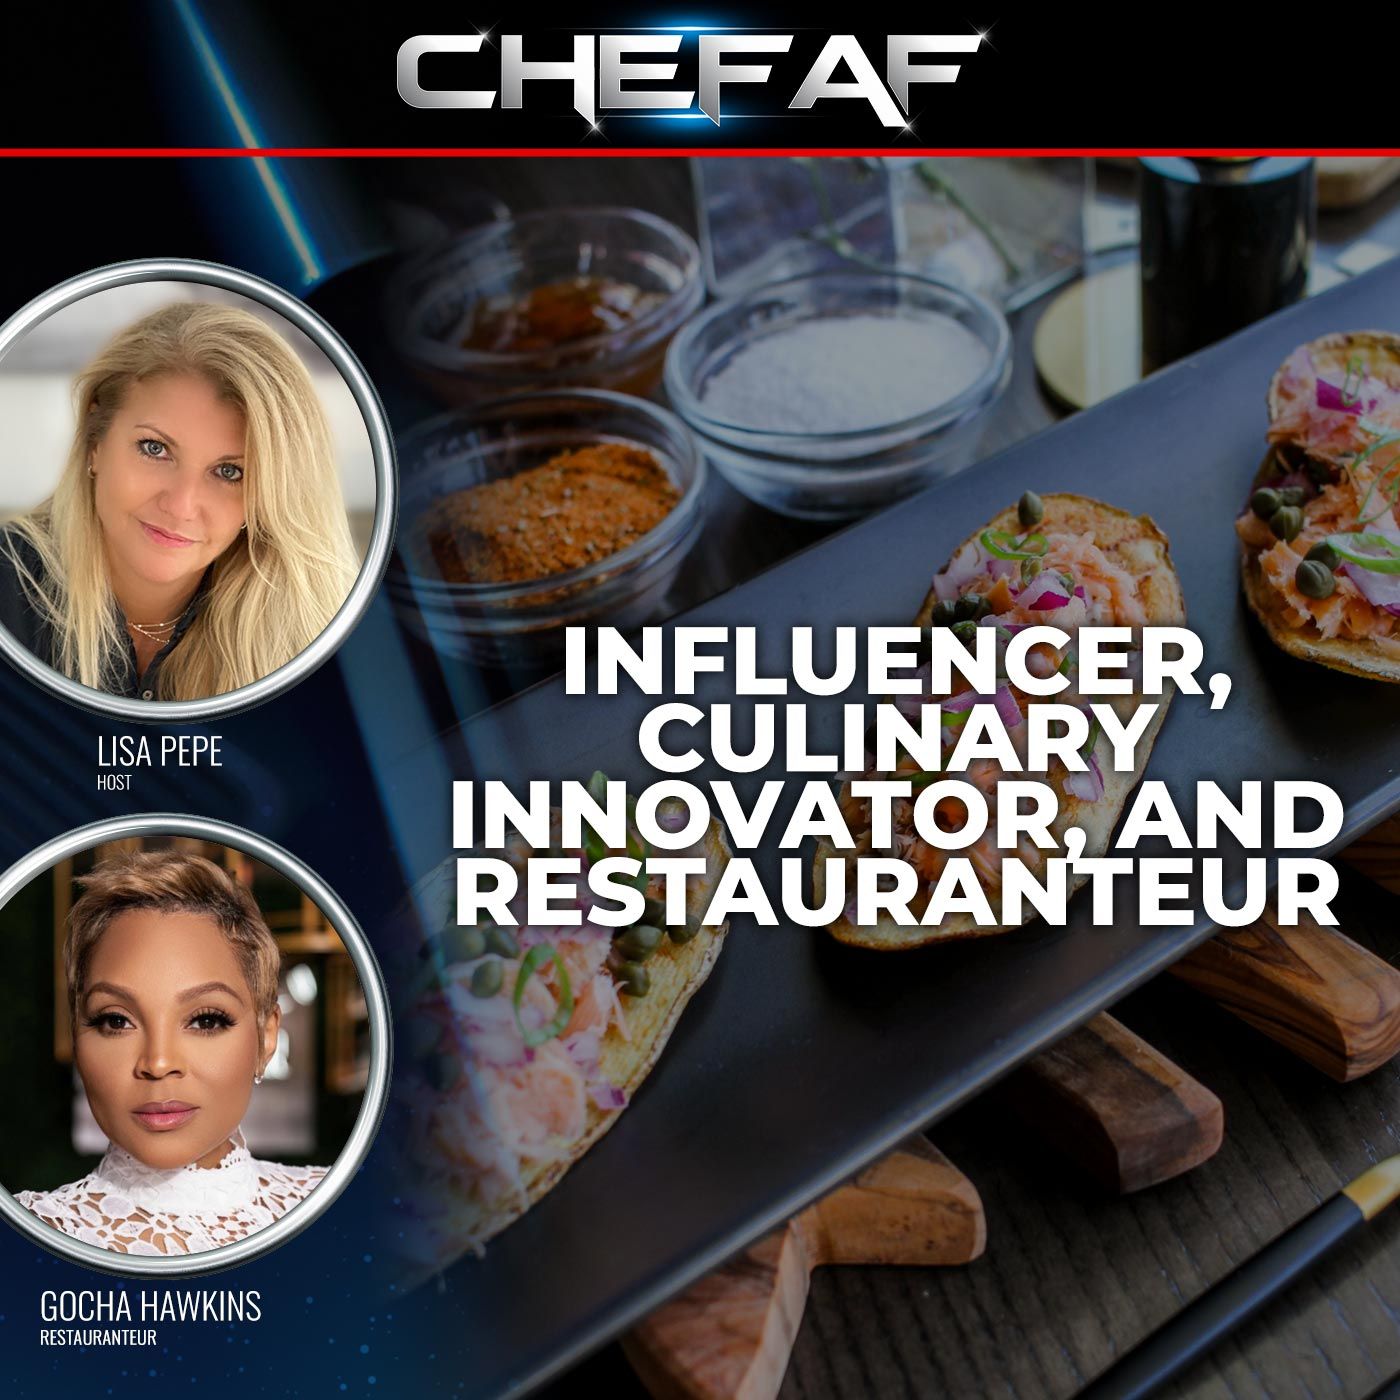 Influencer, Culinary Innovator, and Restauranteur